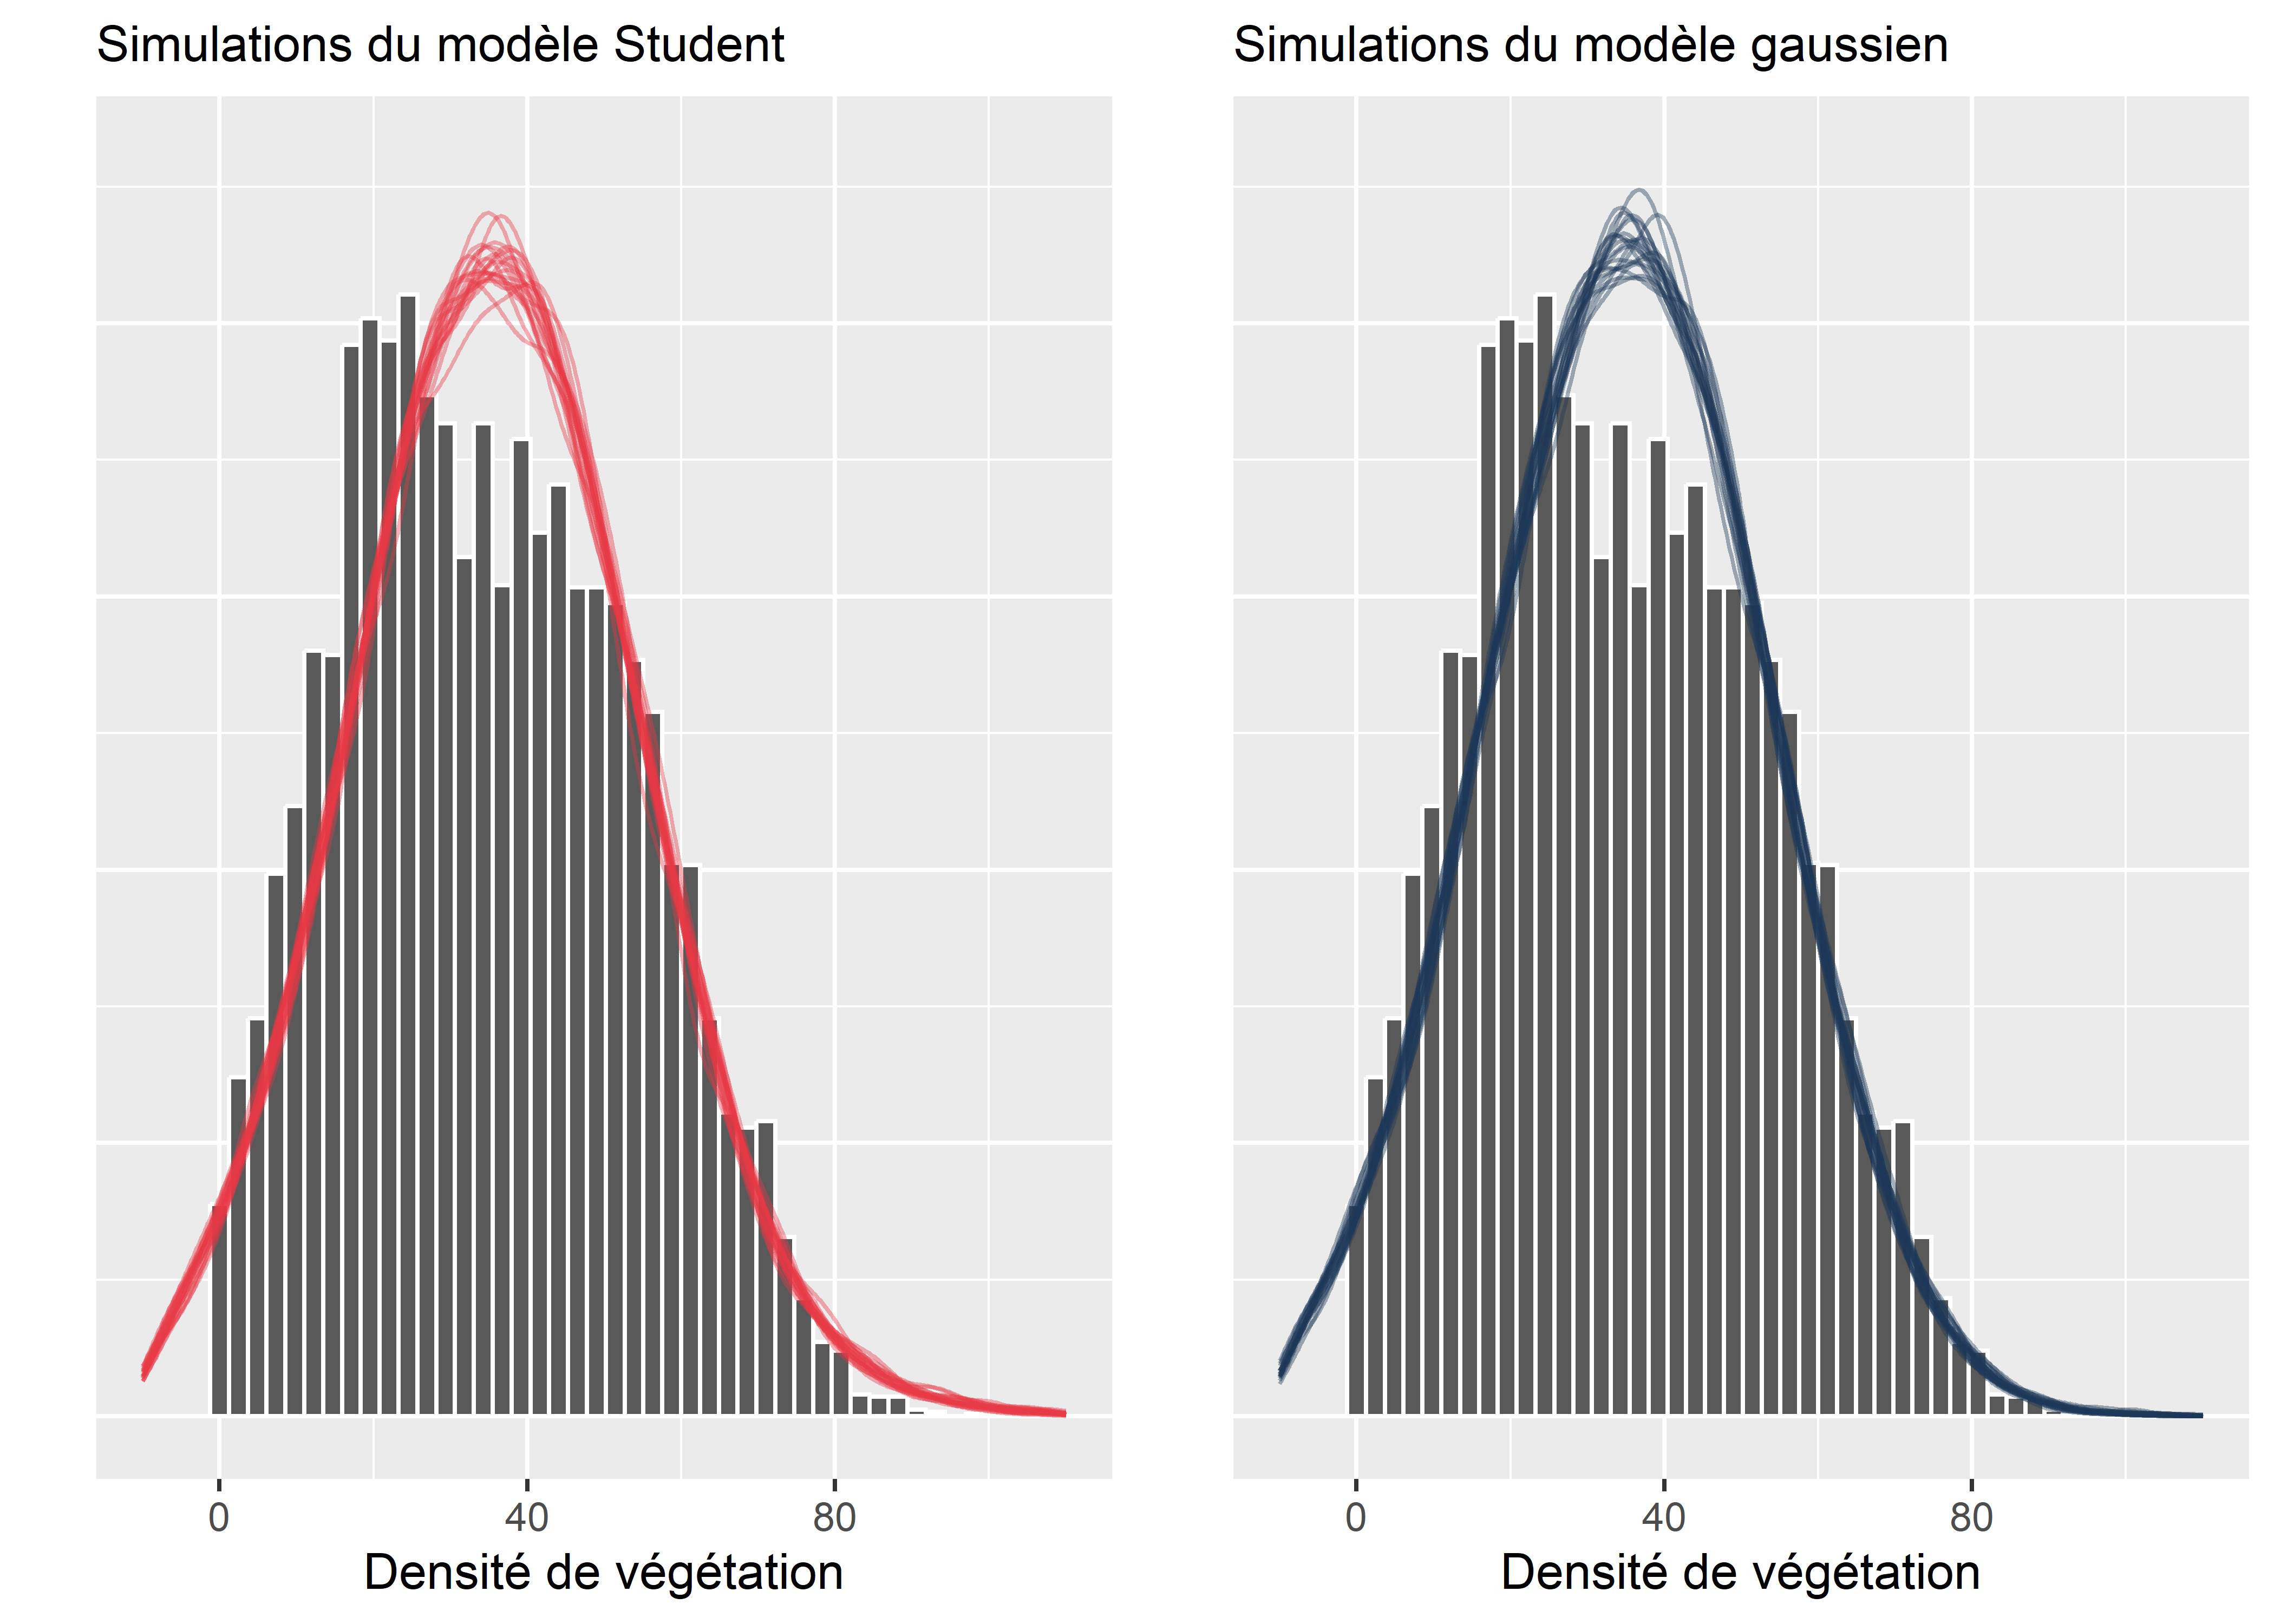 Simulations issues des modèles gaussien et de Student, comparées aux données originales